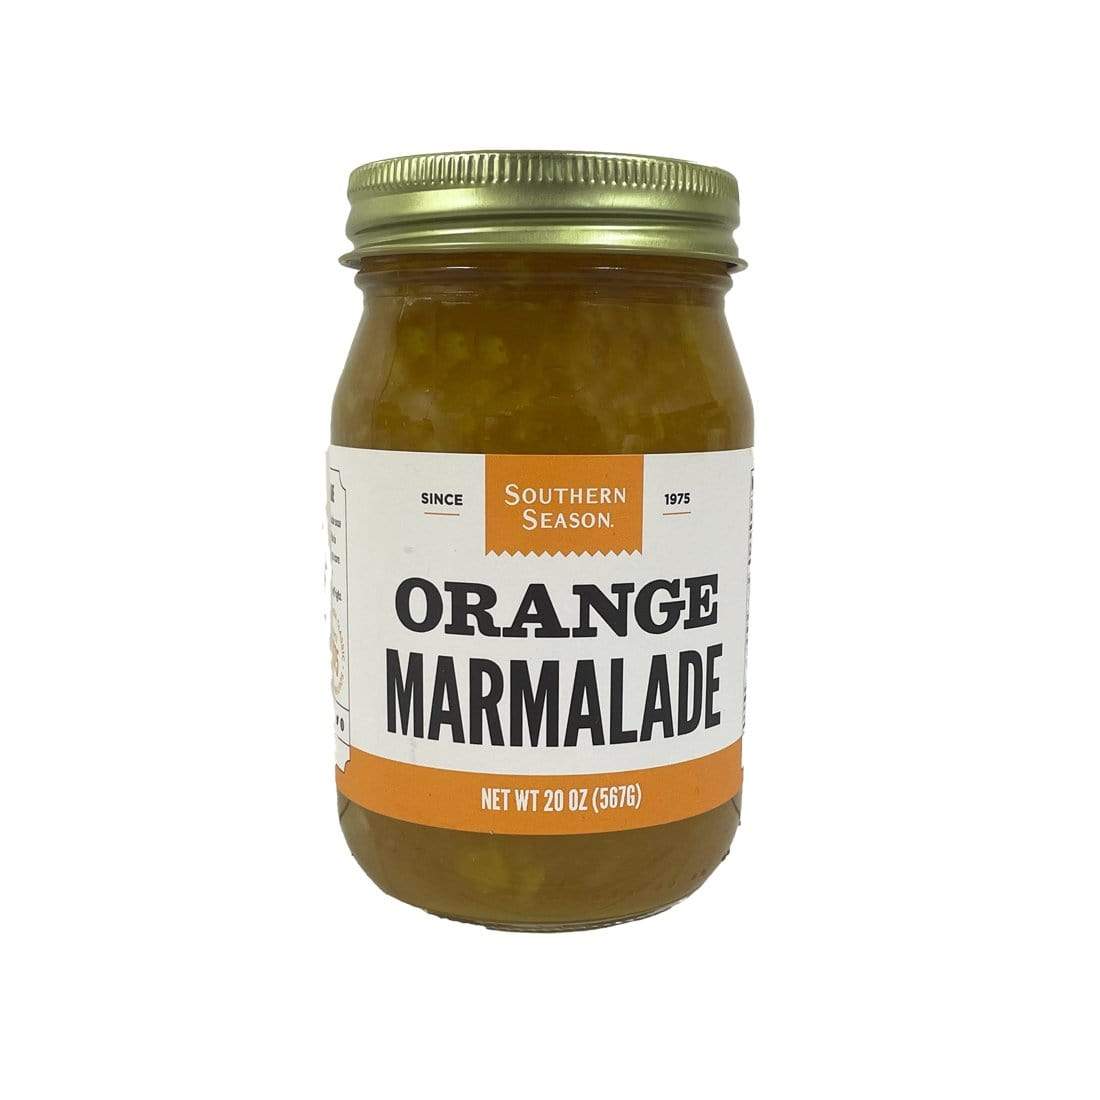 Southern Season Southern Season Orange Marmalade Jam 20 oz